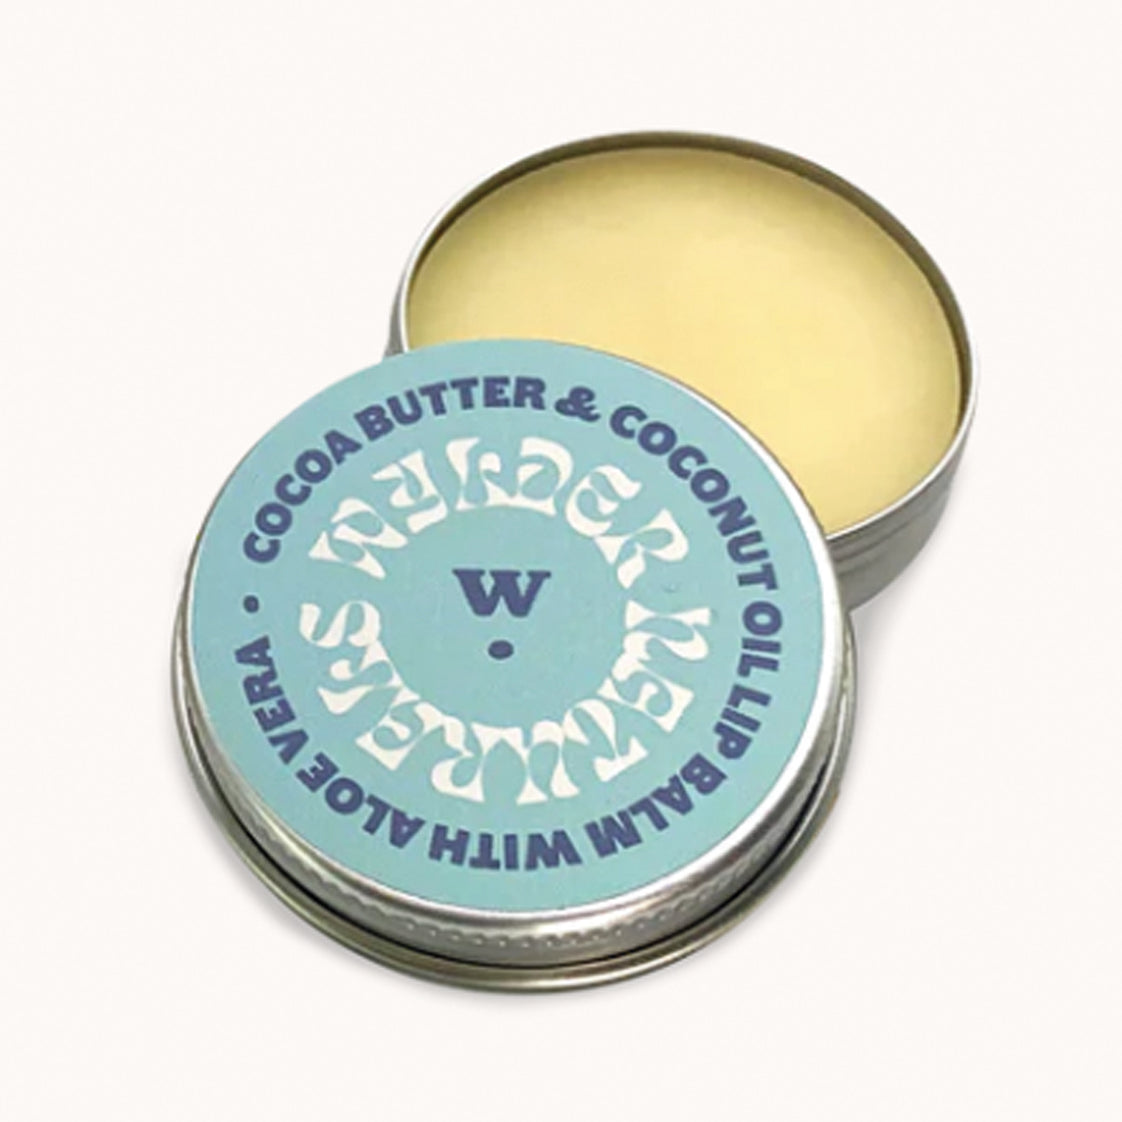 Wylder Naturals Lip Balm - Cocoa Butter & Coconut Oil with Aloe Vera